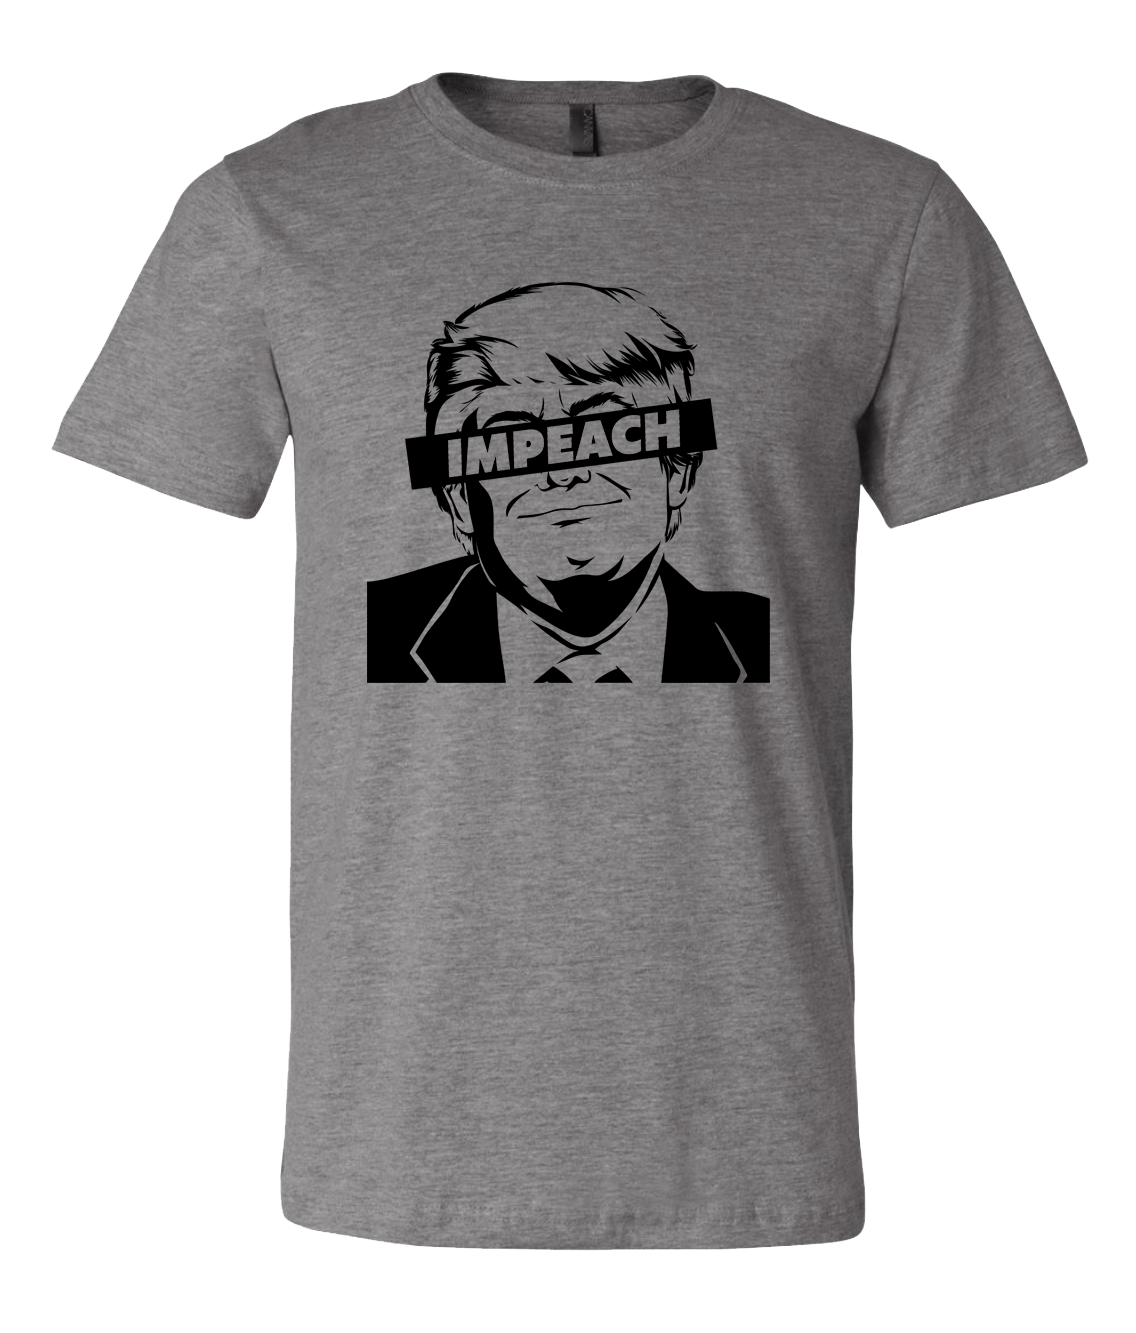 Impeach Trump Shirt